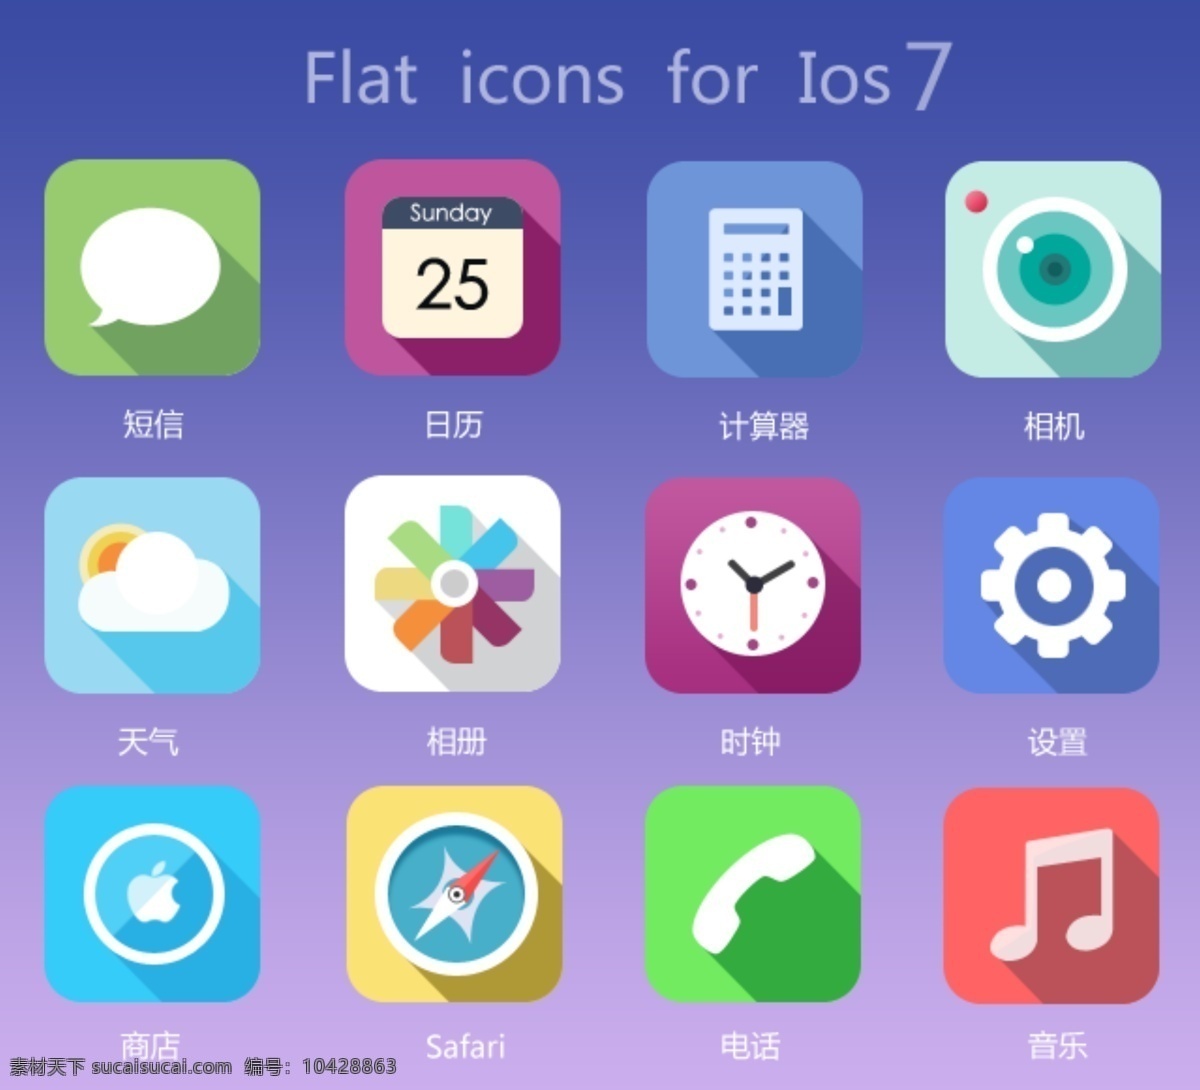 扁平化图标 图标 icon 分层 app 手机 扁平化 网页设计 蓝色